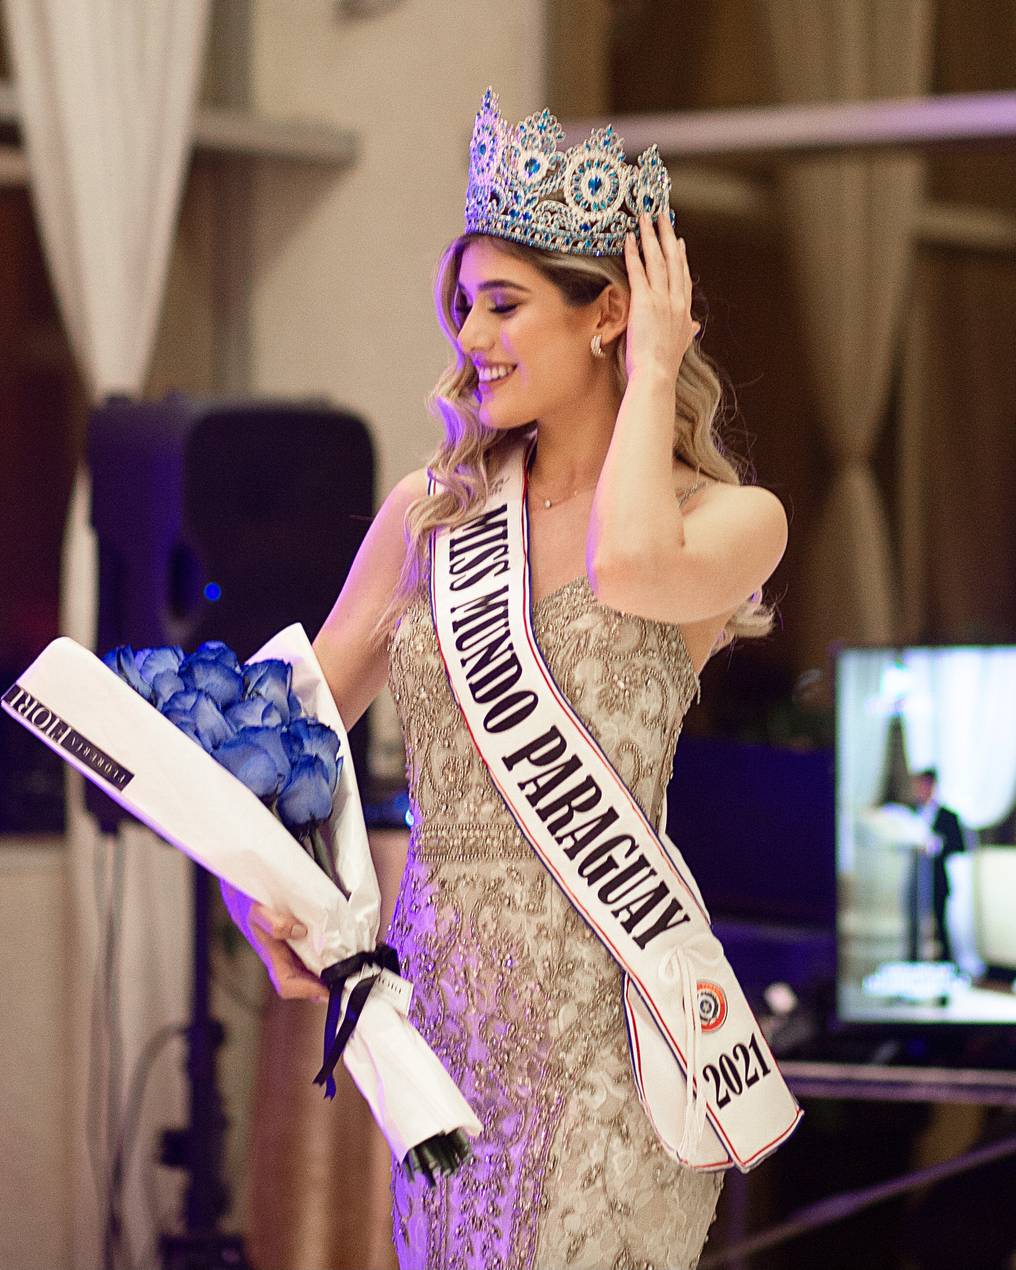 En el 2017, participó por primera vez de un concurso de belleza distrital, siendo proclamada soberana de su ciudad natal Presidente Franco, en la categoría “Teen”. Foto: Gentileza